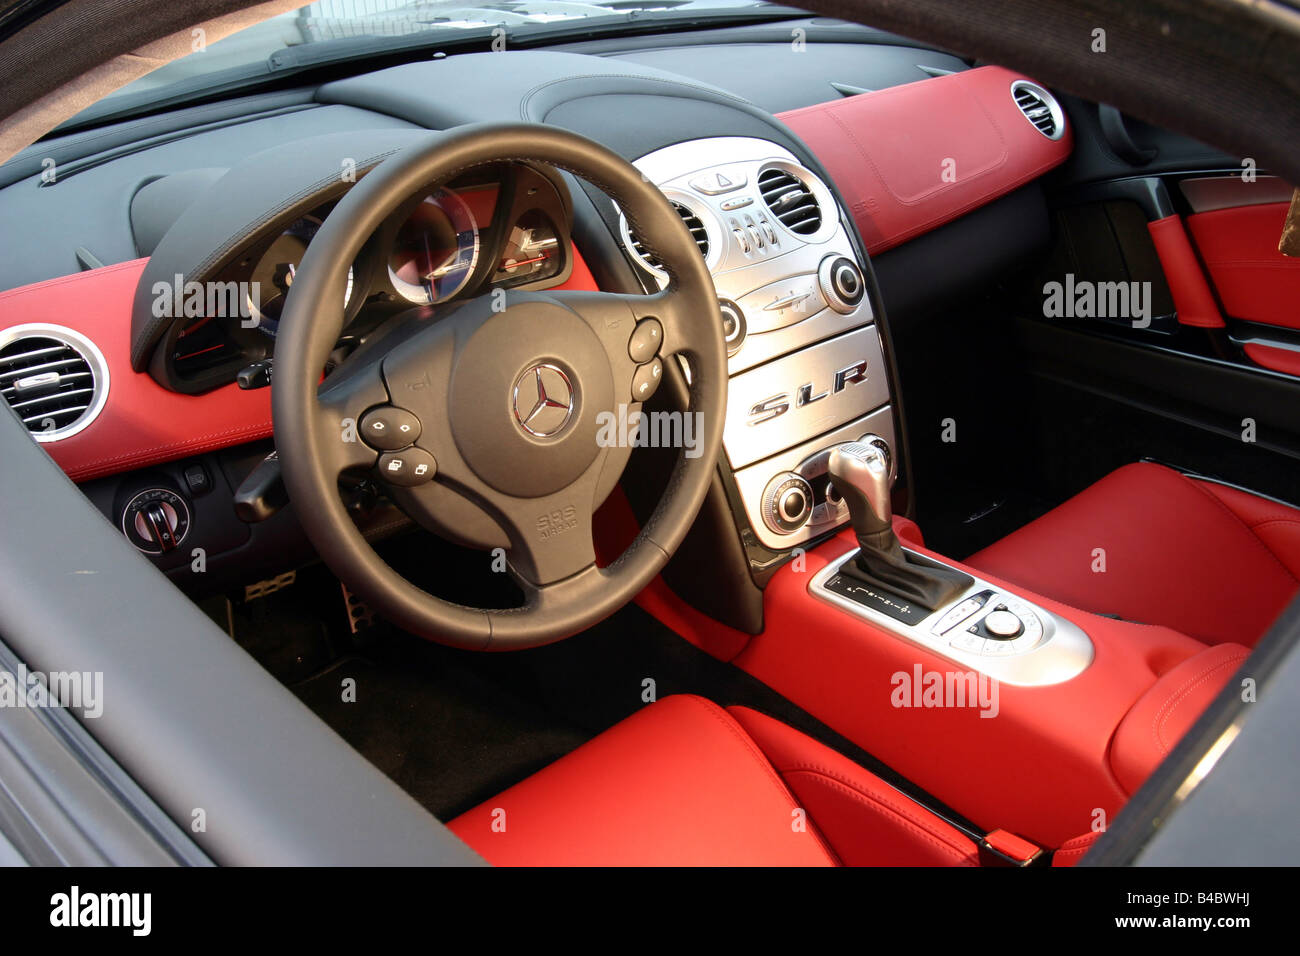 Mercedes slr interieur -Fotos und -Bildmaterial in hoher Auflösung – Alamy